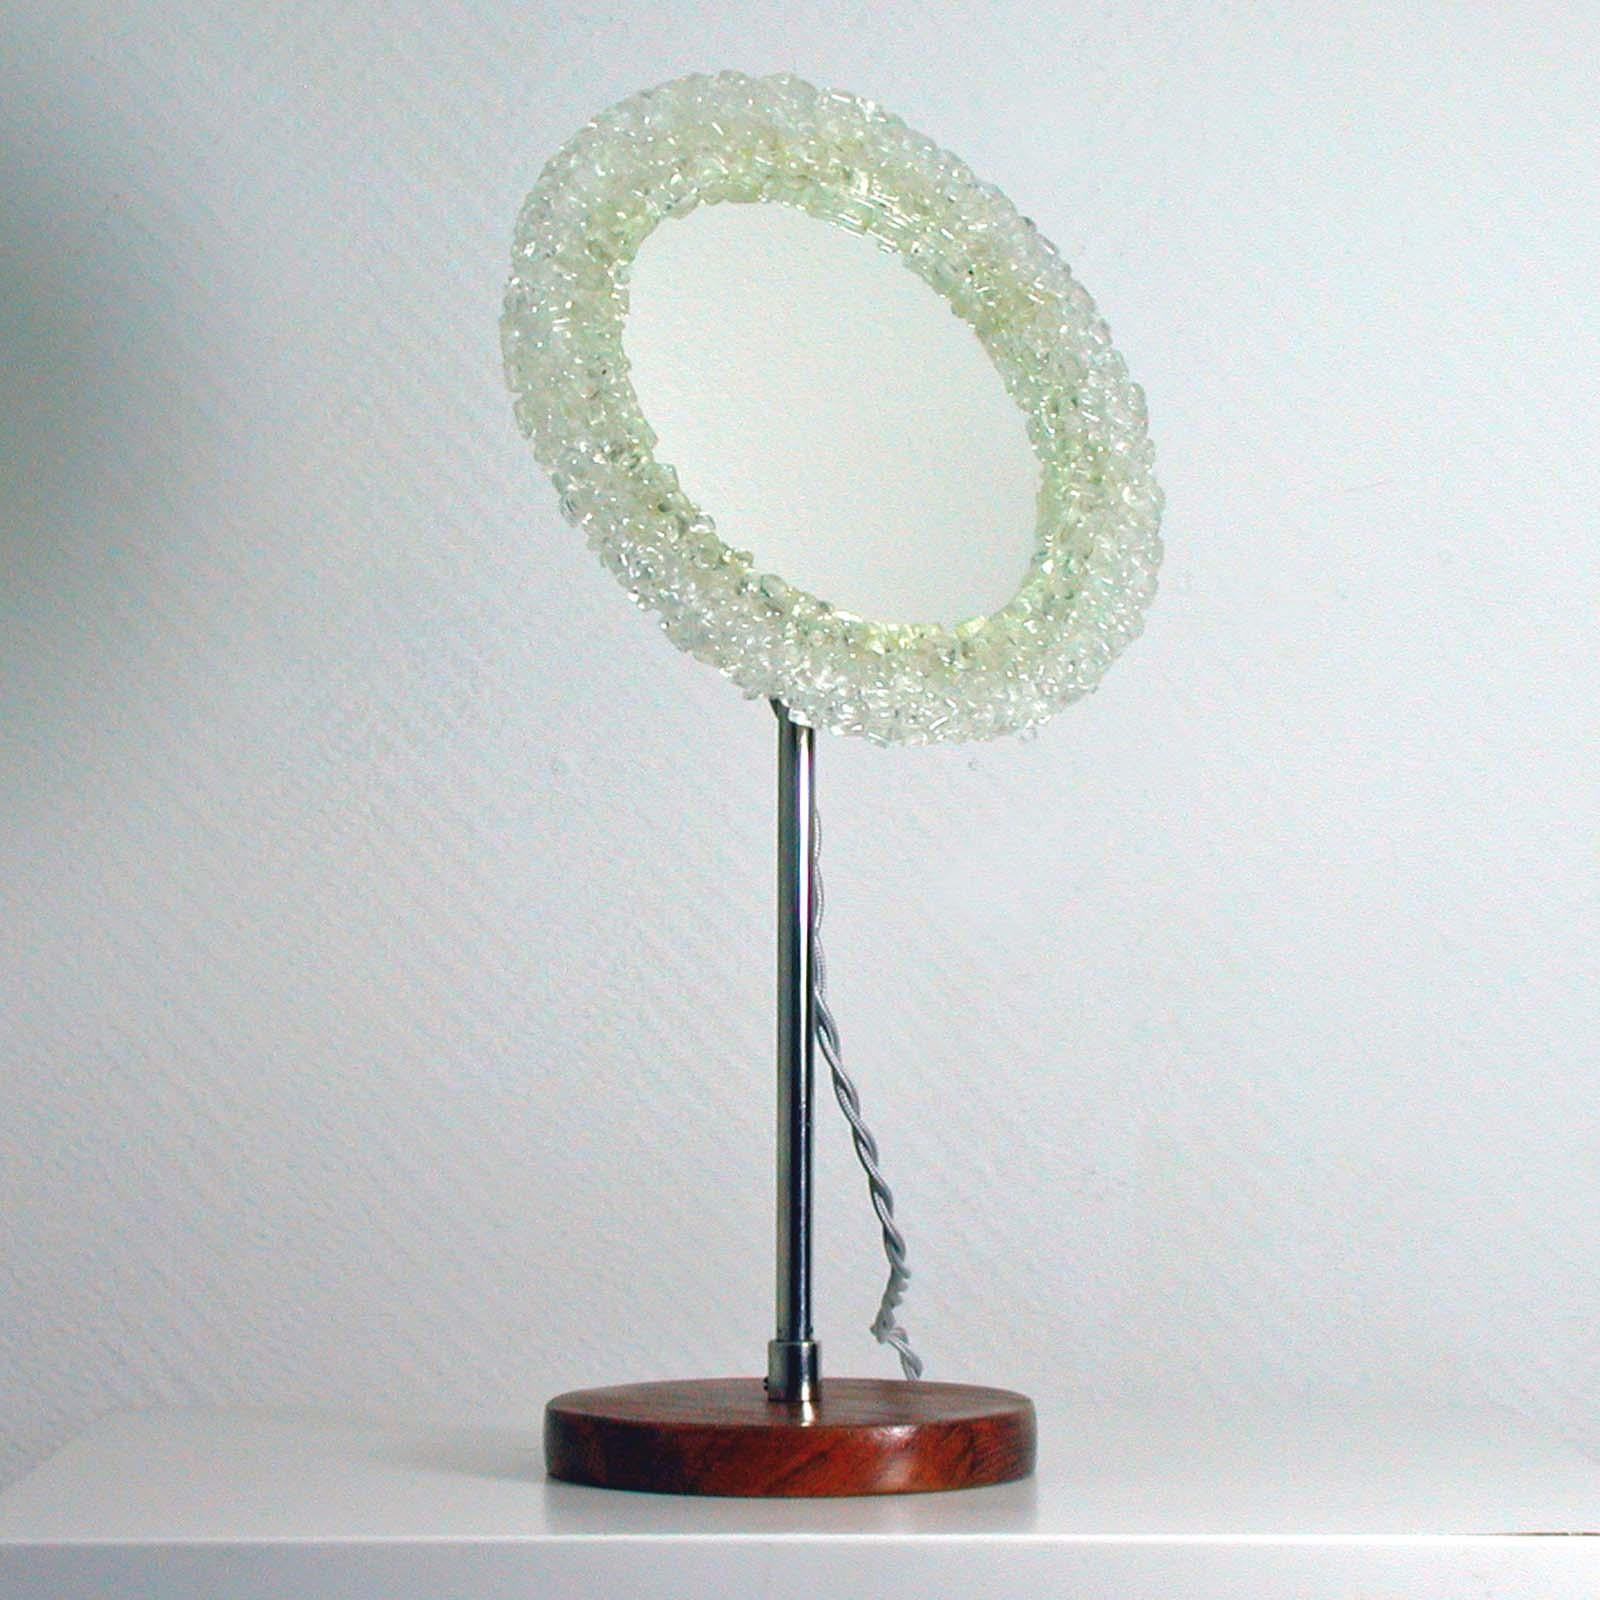 Ce miroir de courtoisie rond a été fabriqué en Suède dans les années 1960-1970. Il est doté d'une base en teck, d'une tige de miroir chromée et d'un cadre acrylique rétroéclairé. Le cadre est réglable.

Le miroir nécessite une petite ampoule à vis